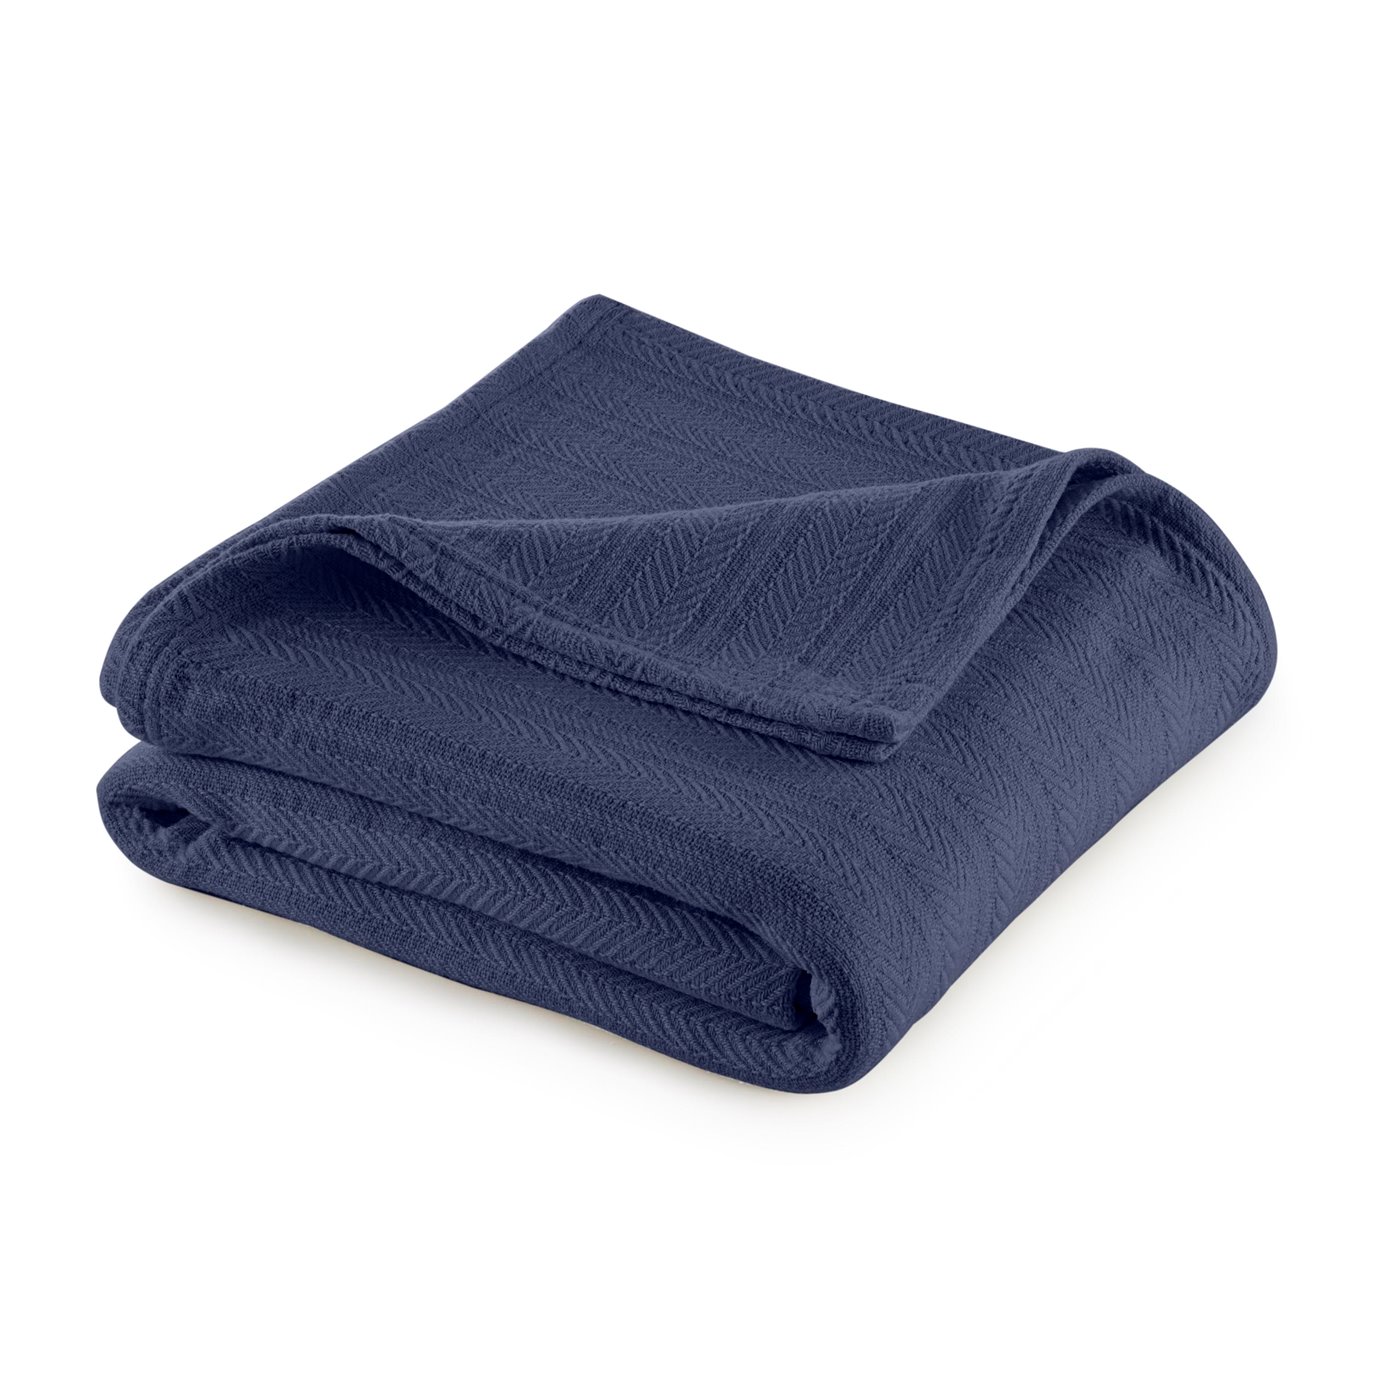 Vellux Cotton King Indigo Blue Blanket